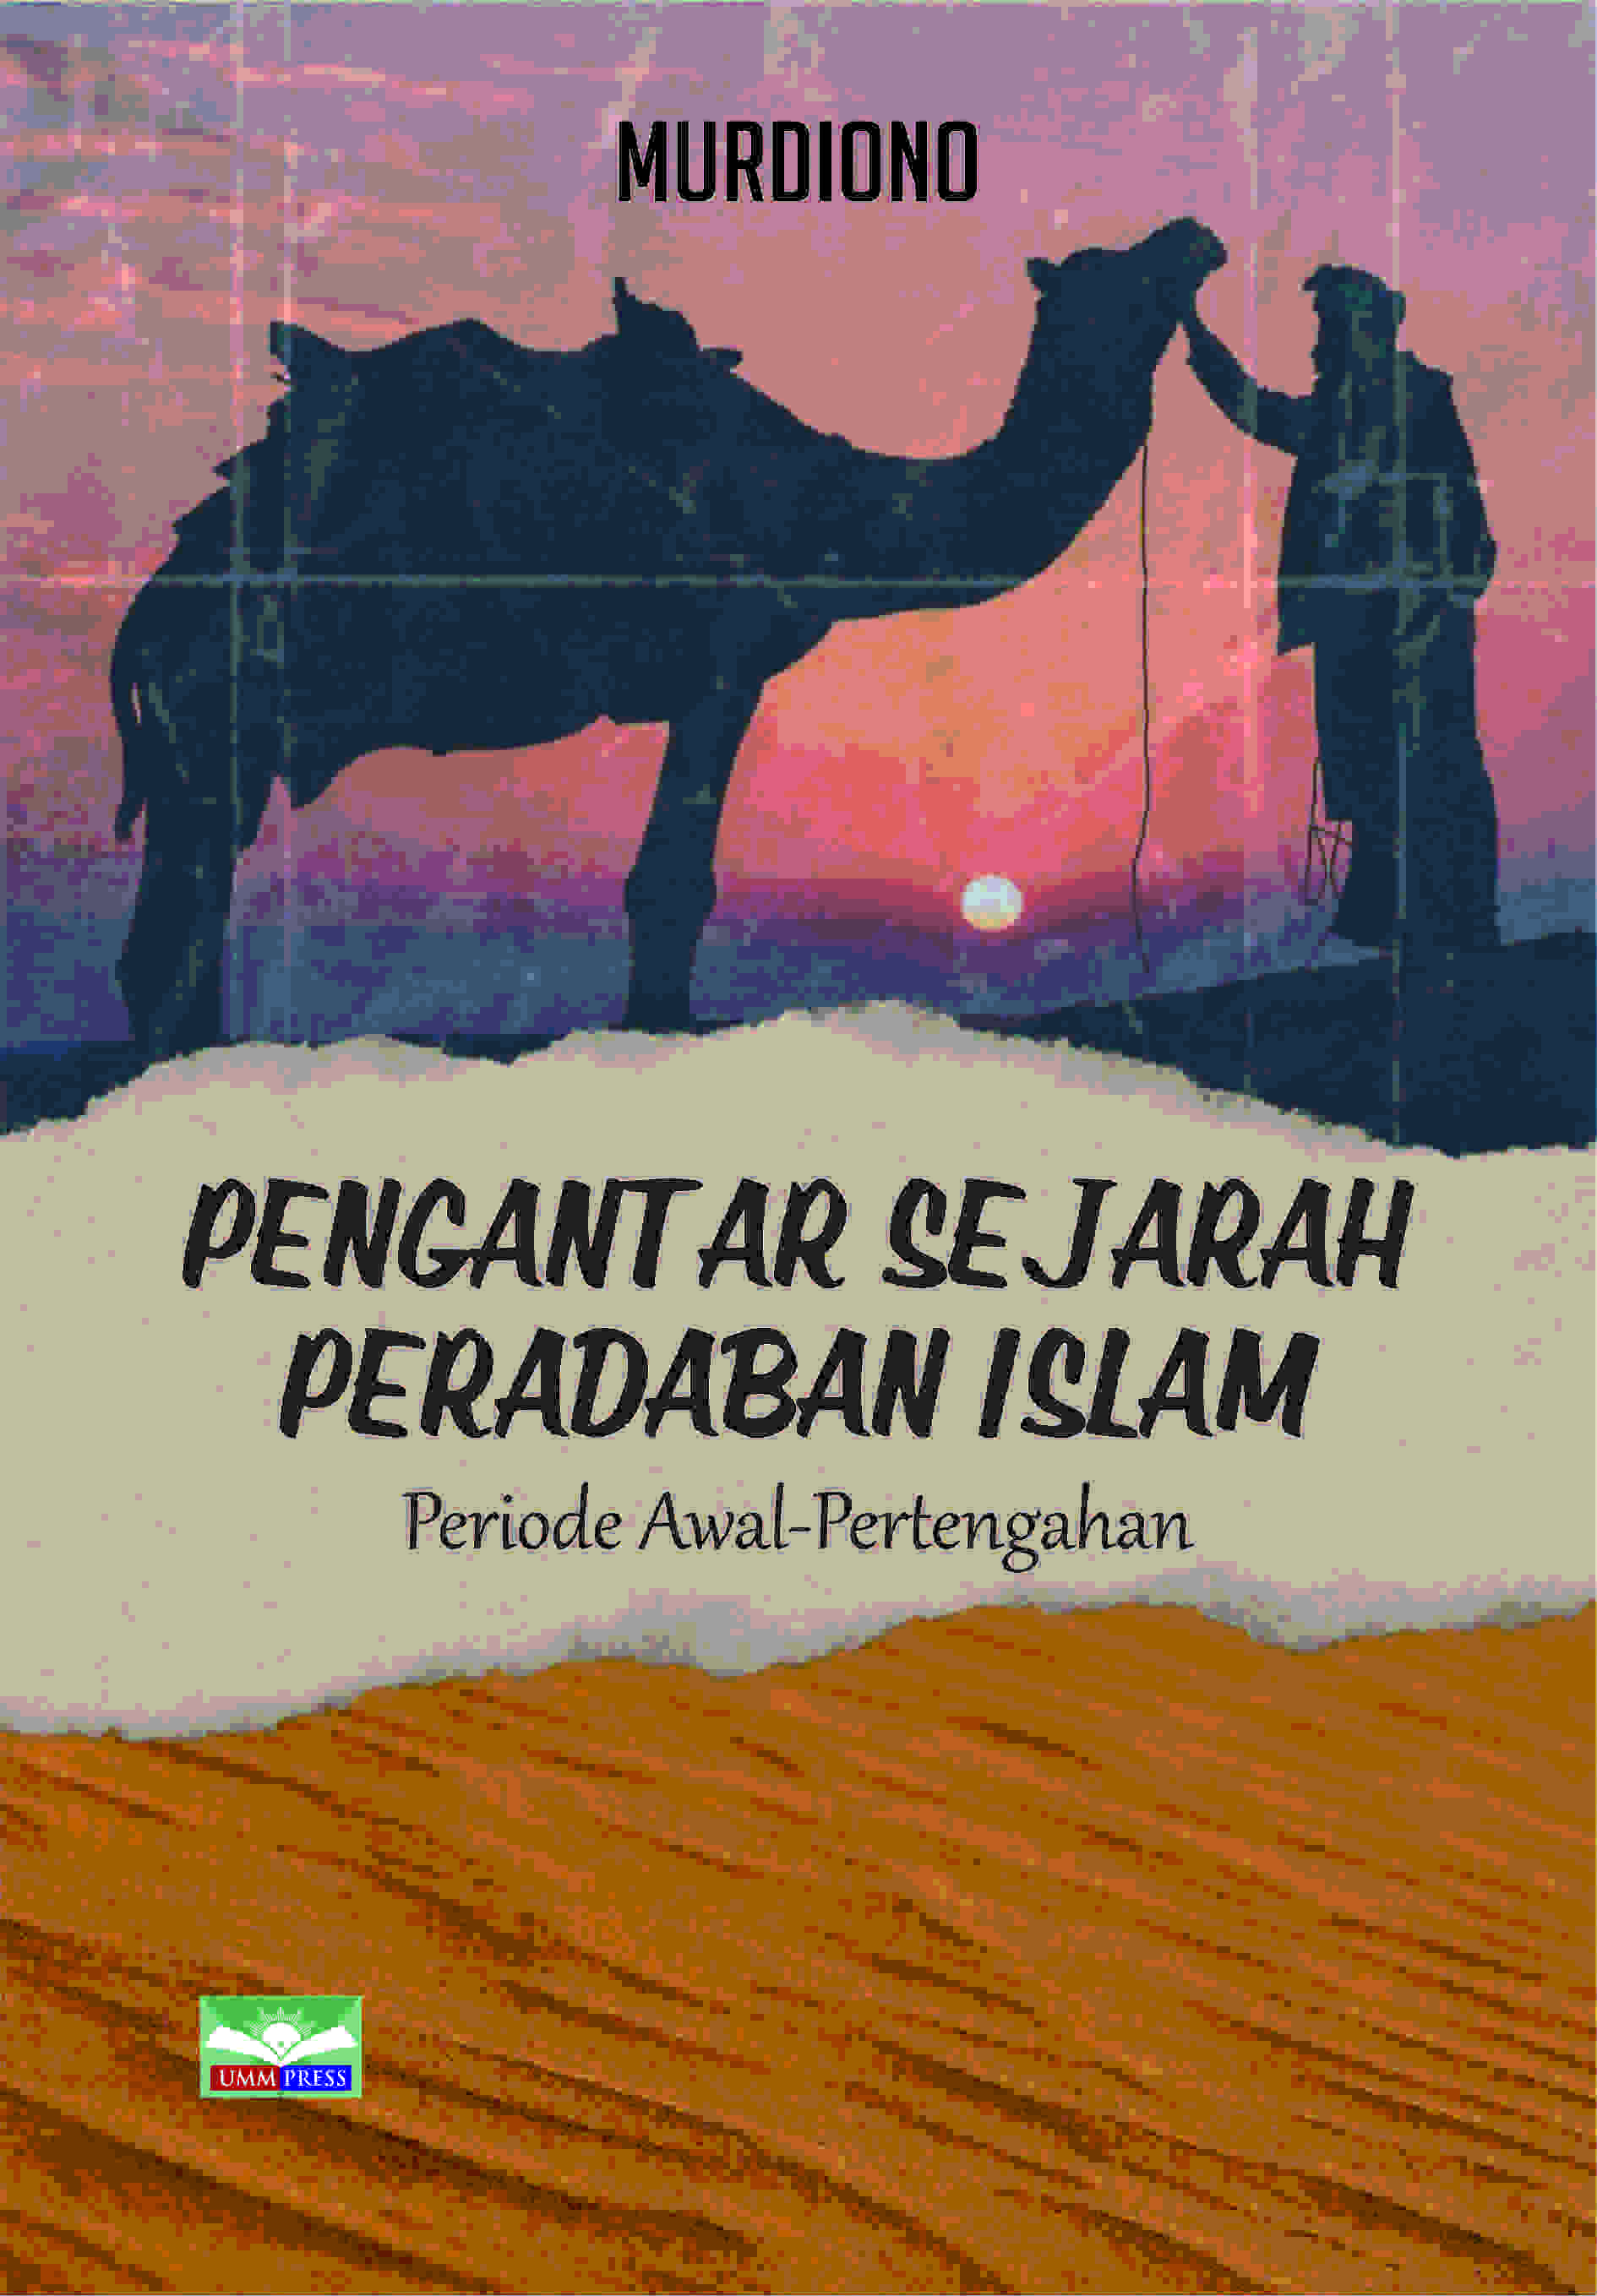 PENGANTAR SEJARAH PERADABAN ISLAM: PERIODE AWAL-PERTENGAHAN